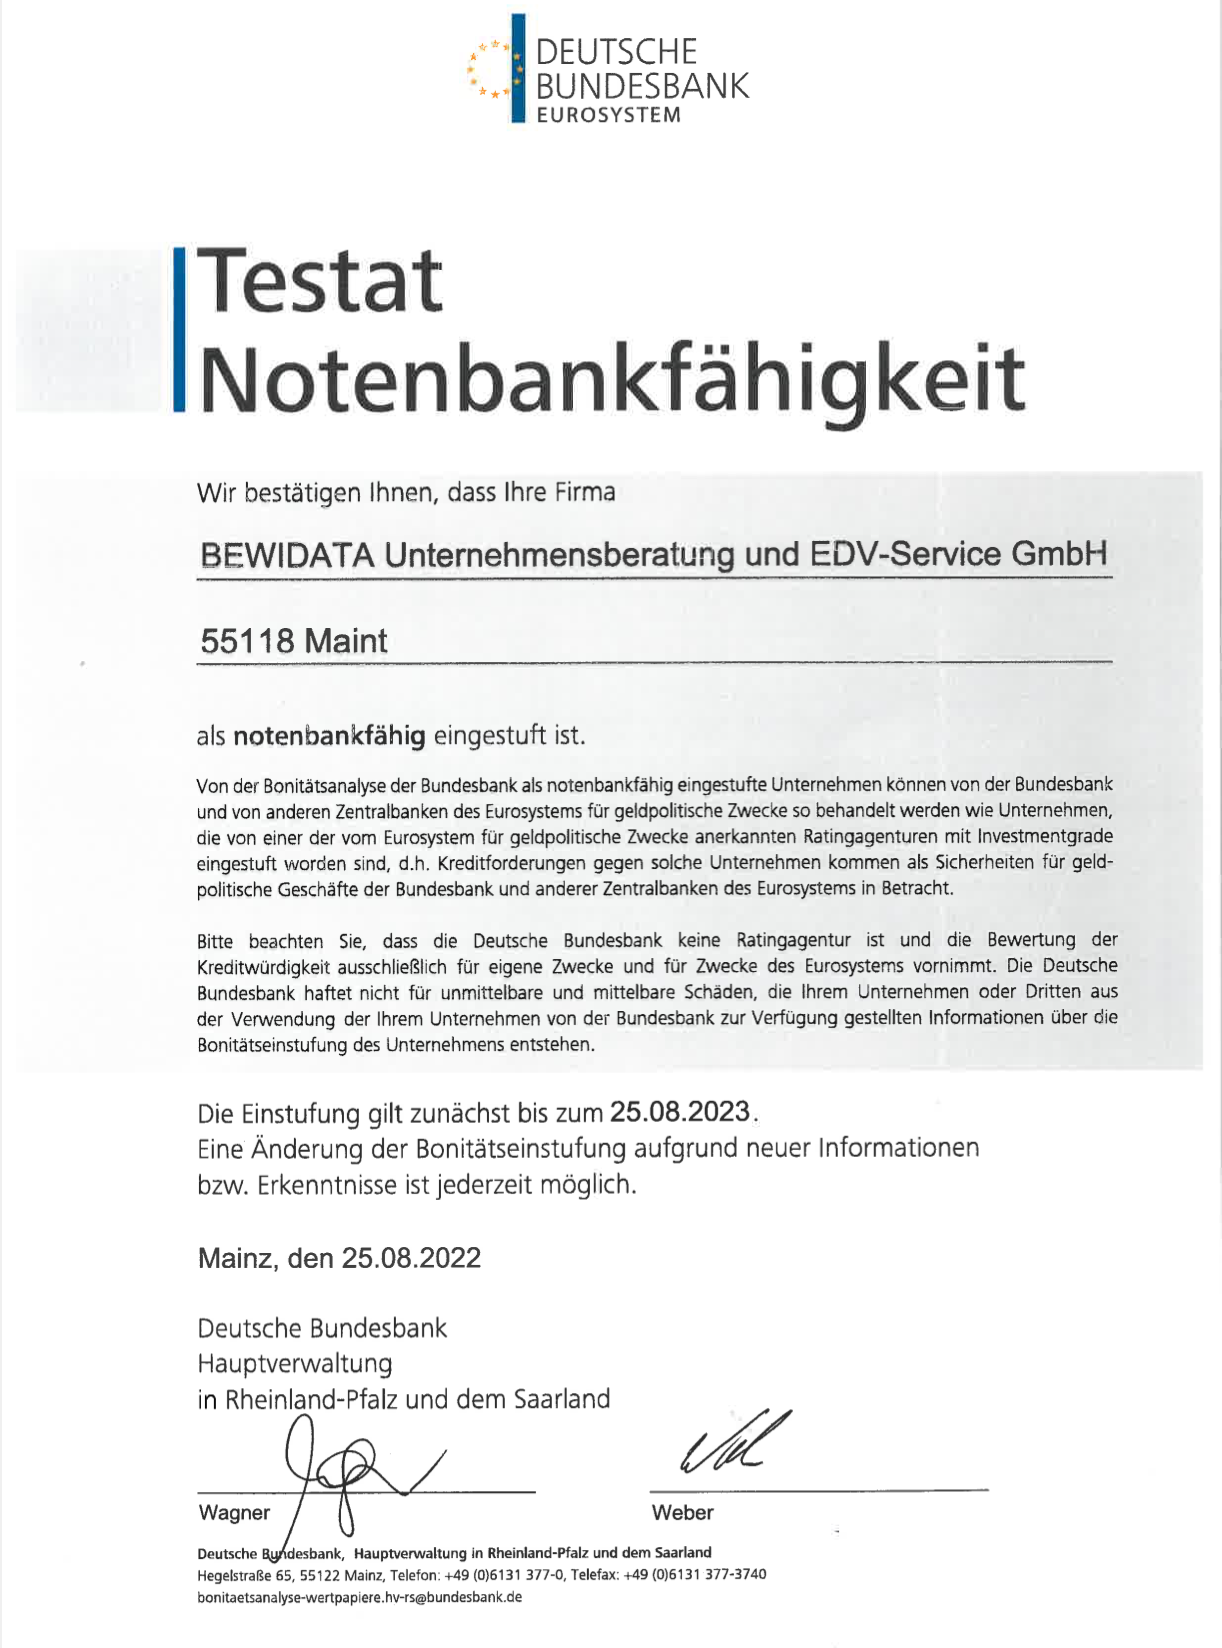 Testat der Bundesbank